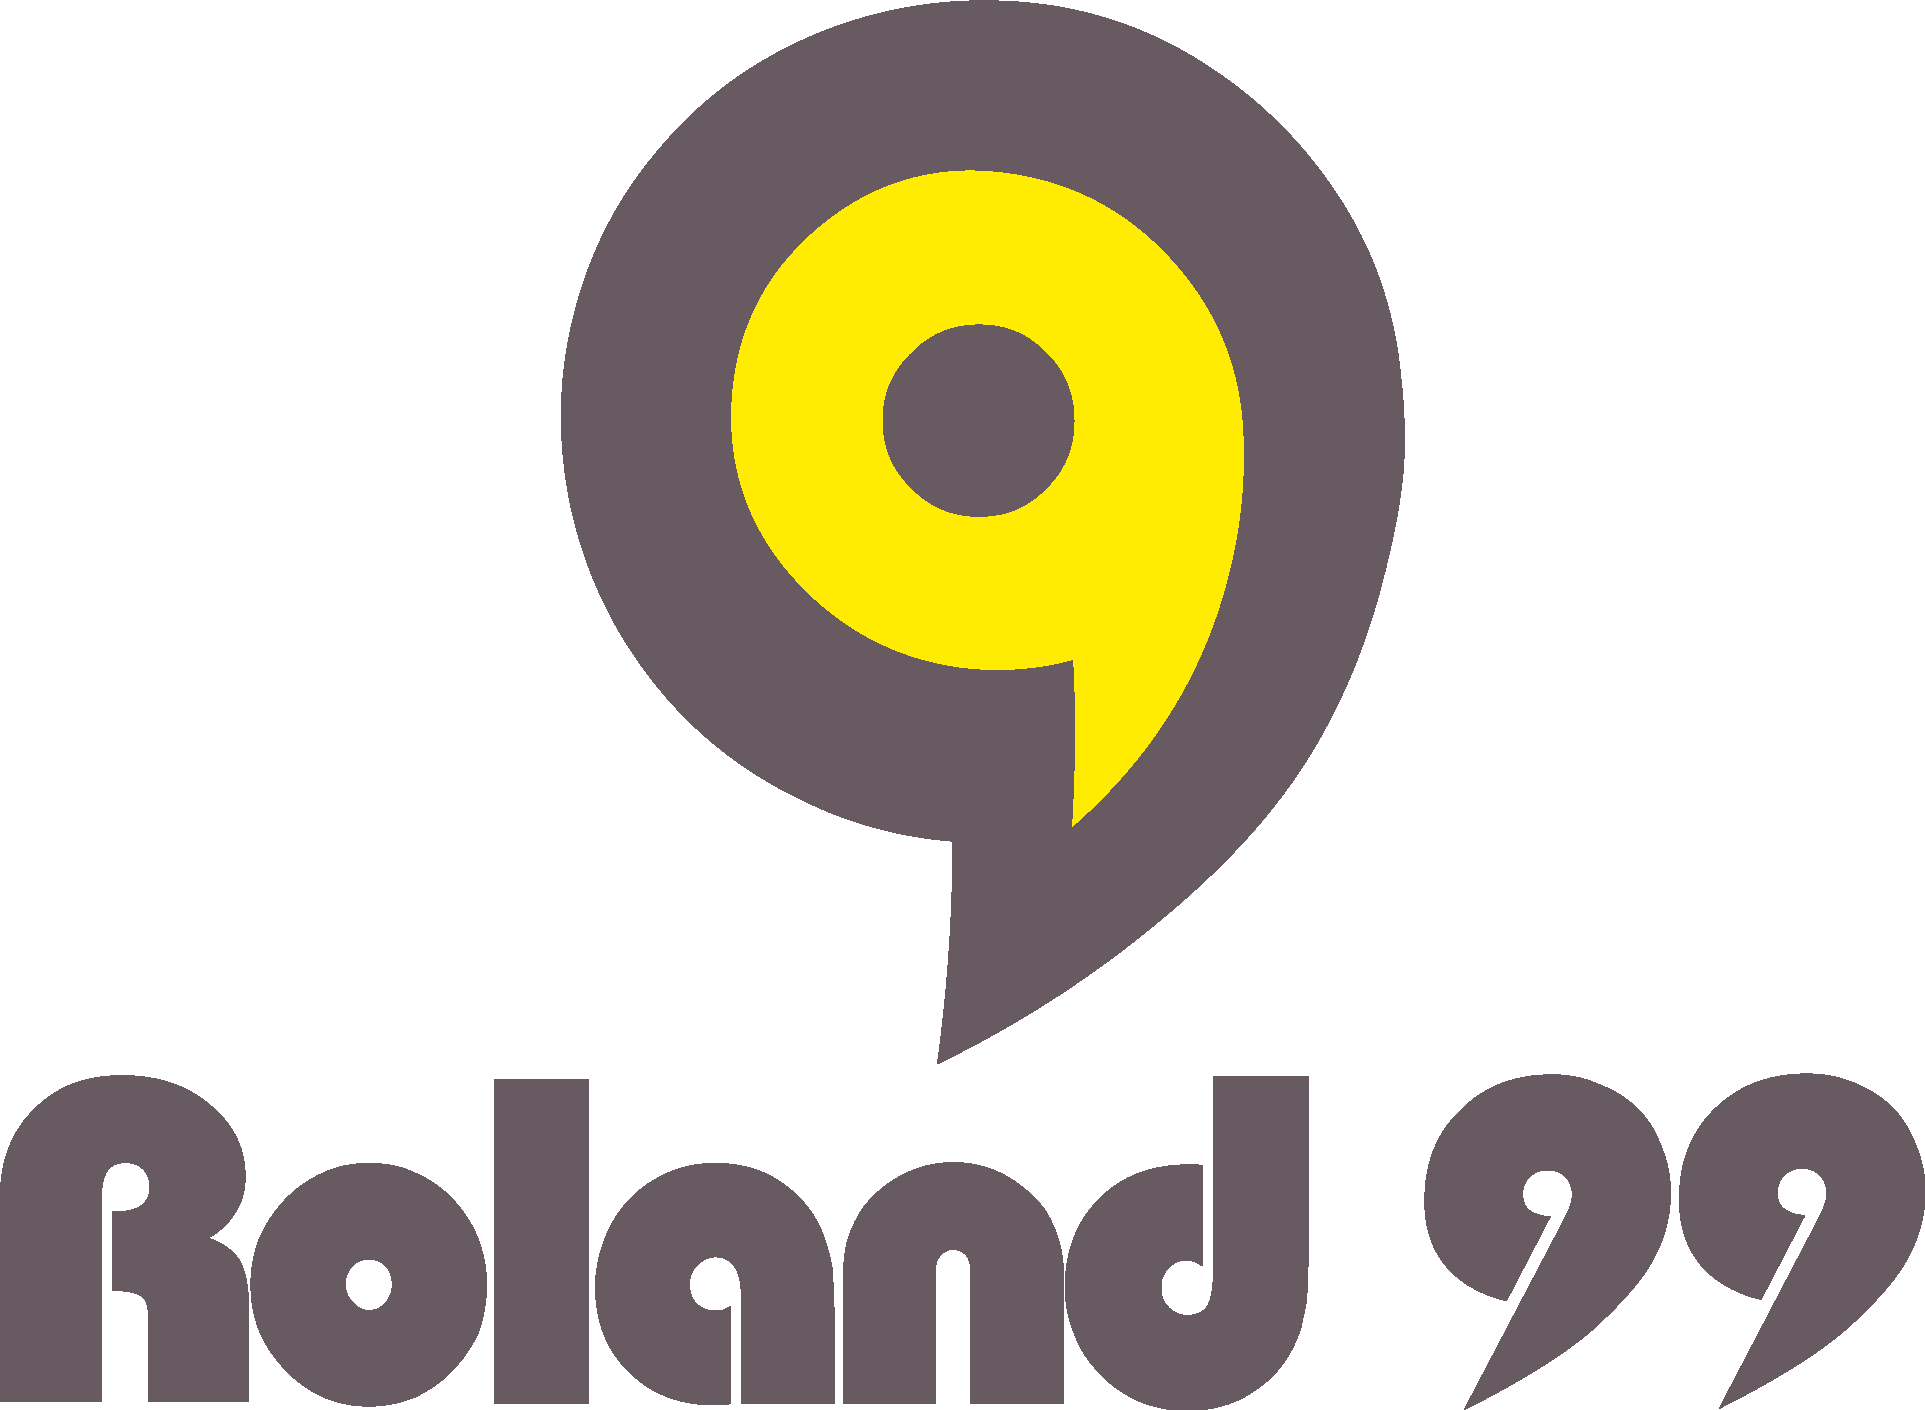 Roland 99 Logo Vector